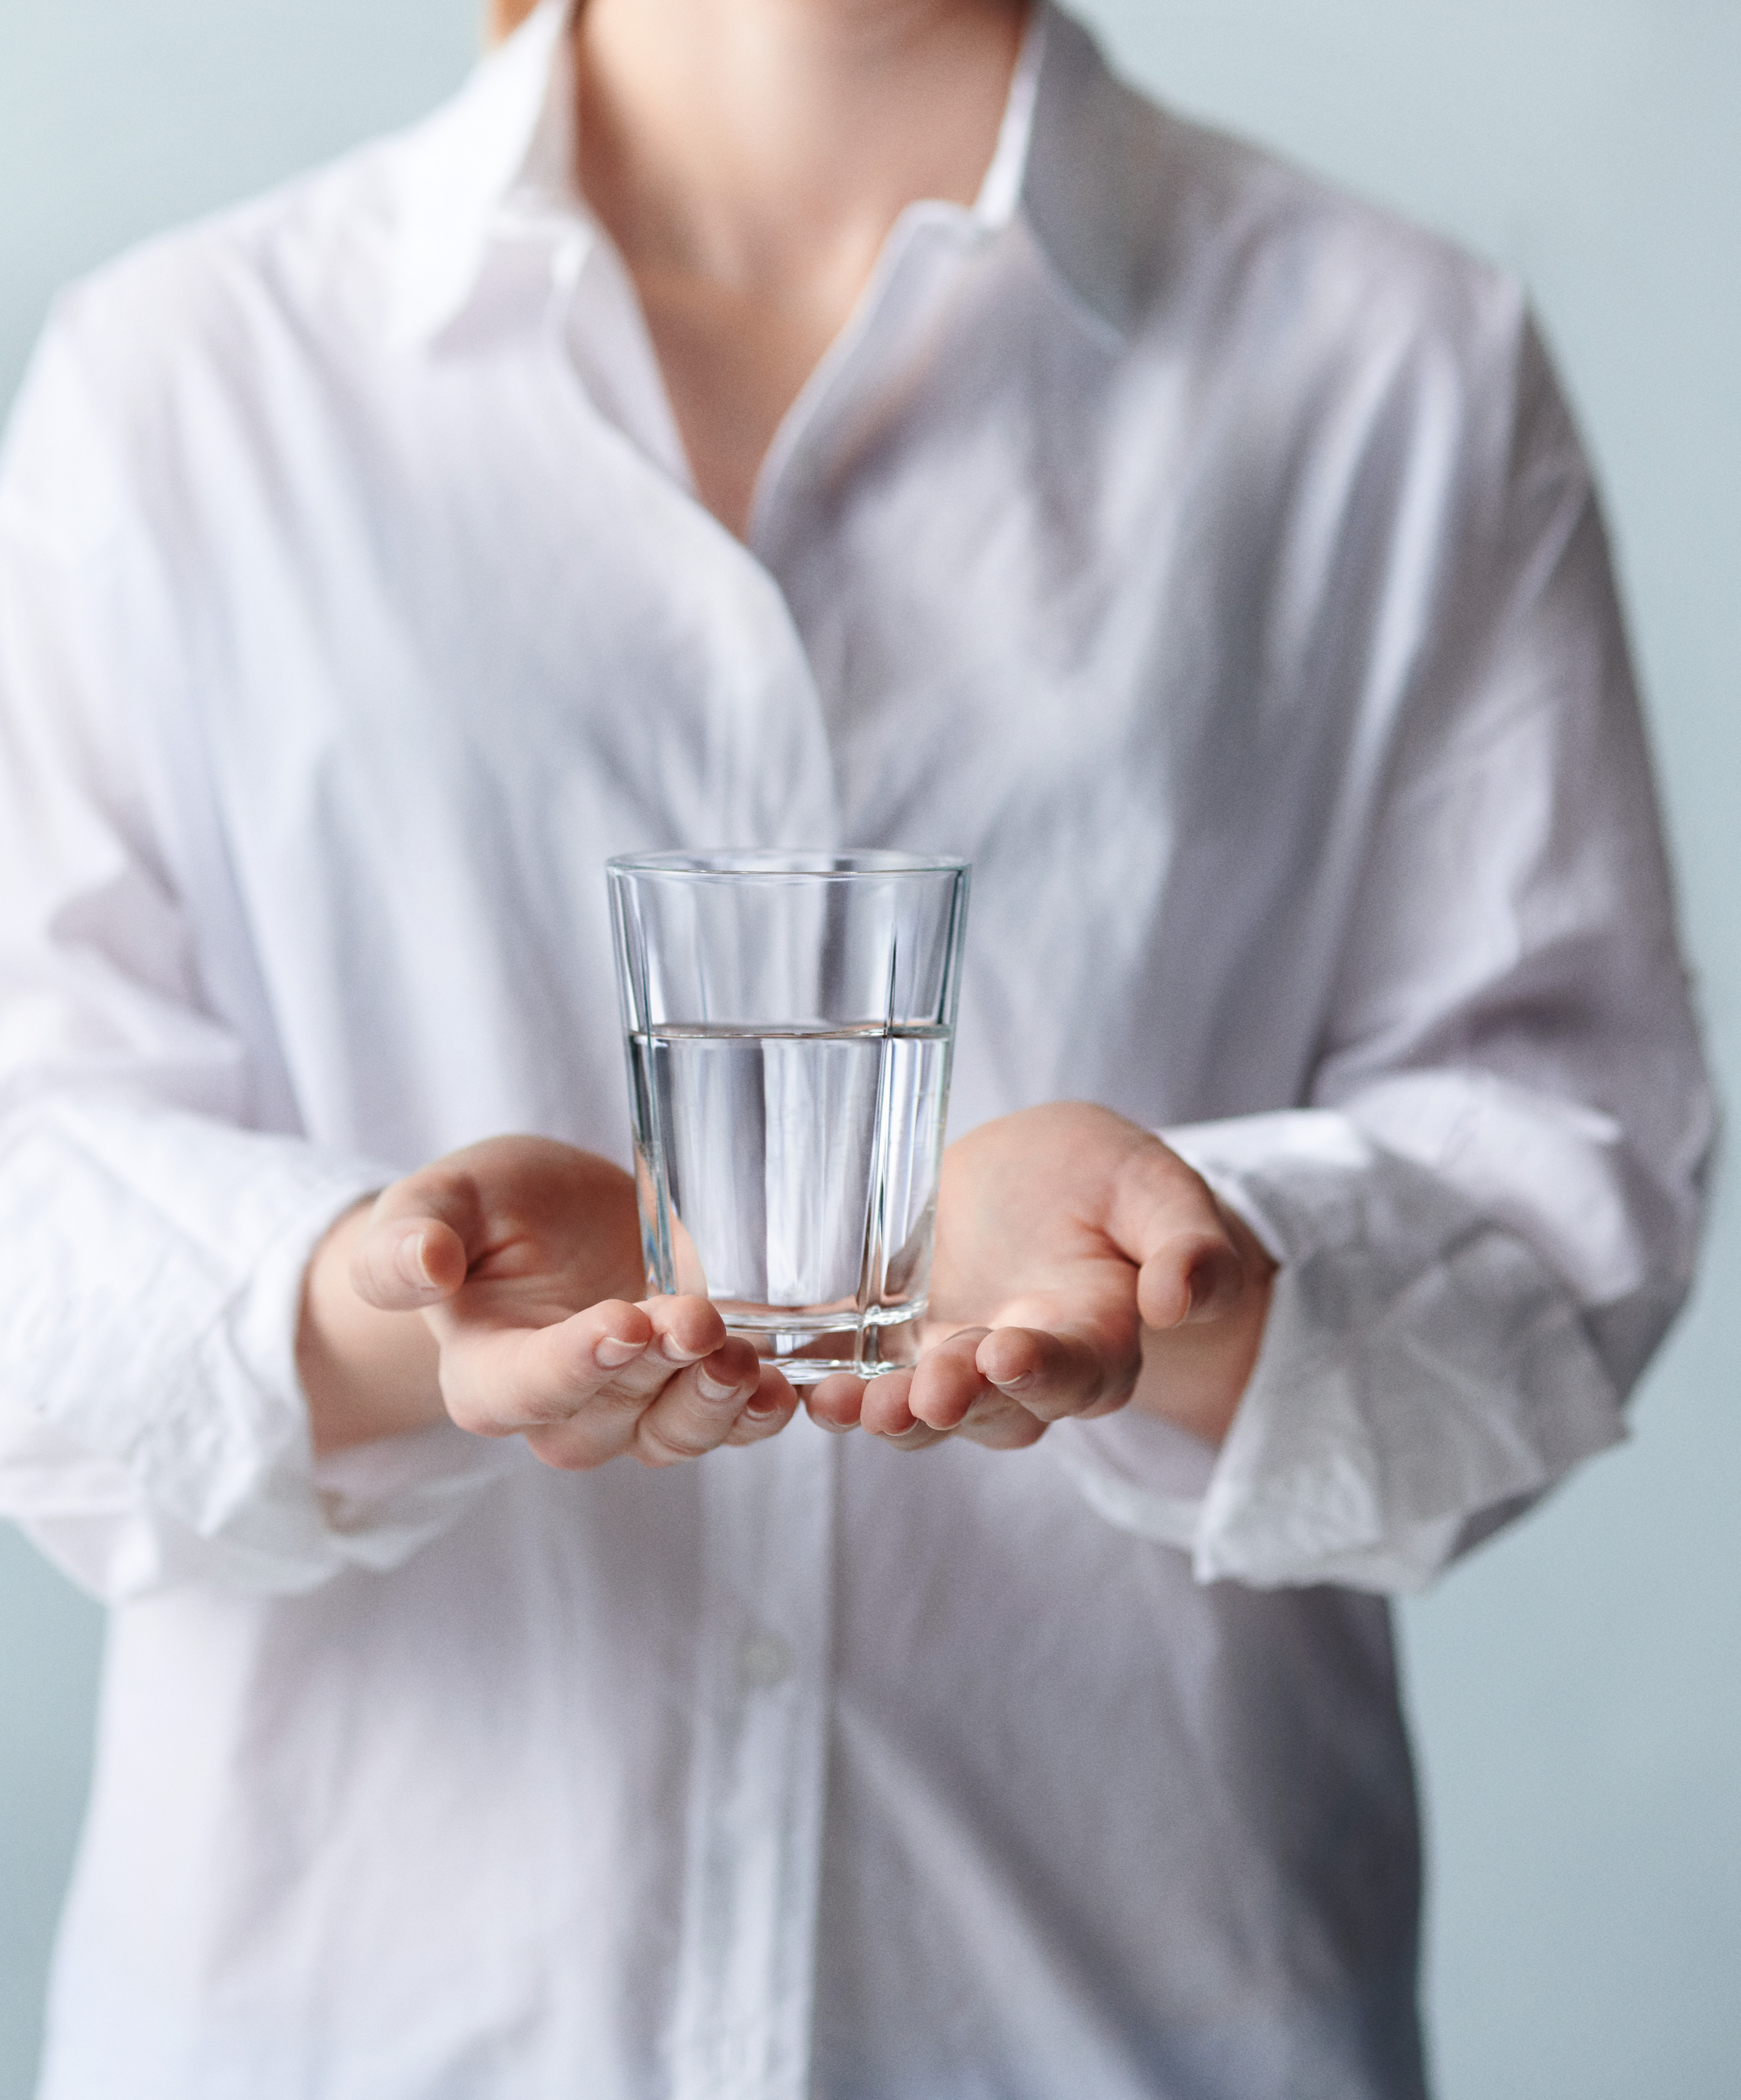 Vattenglas från Rosendahl, Grand Cru, i händerna på kvinna i vit skjorta